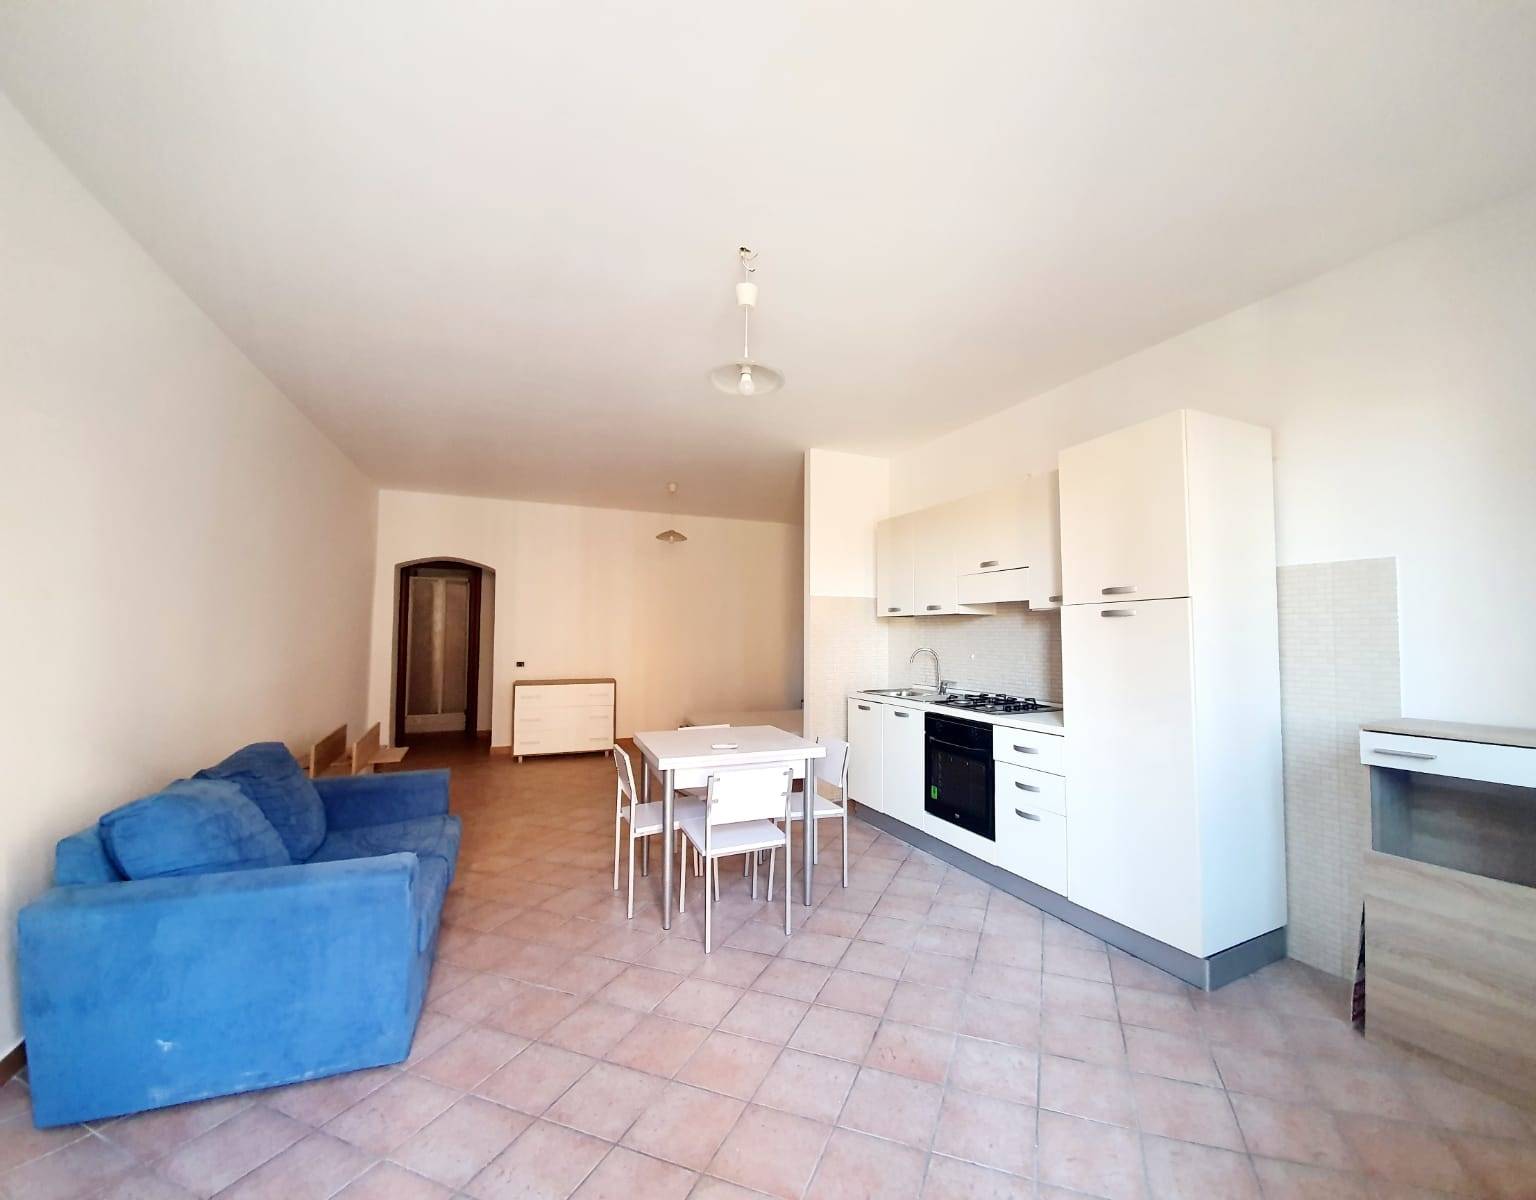 Appartamento in affitto a Fiano Romano, 1 locali, zona Località: CENTRO, prezzo € 450 | CambioCasa.it